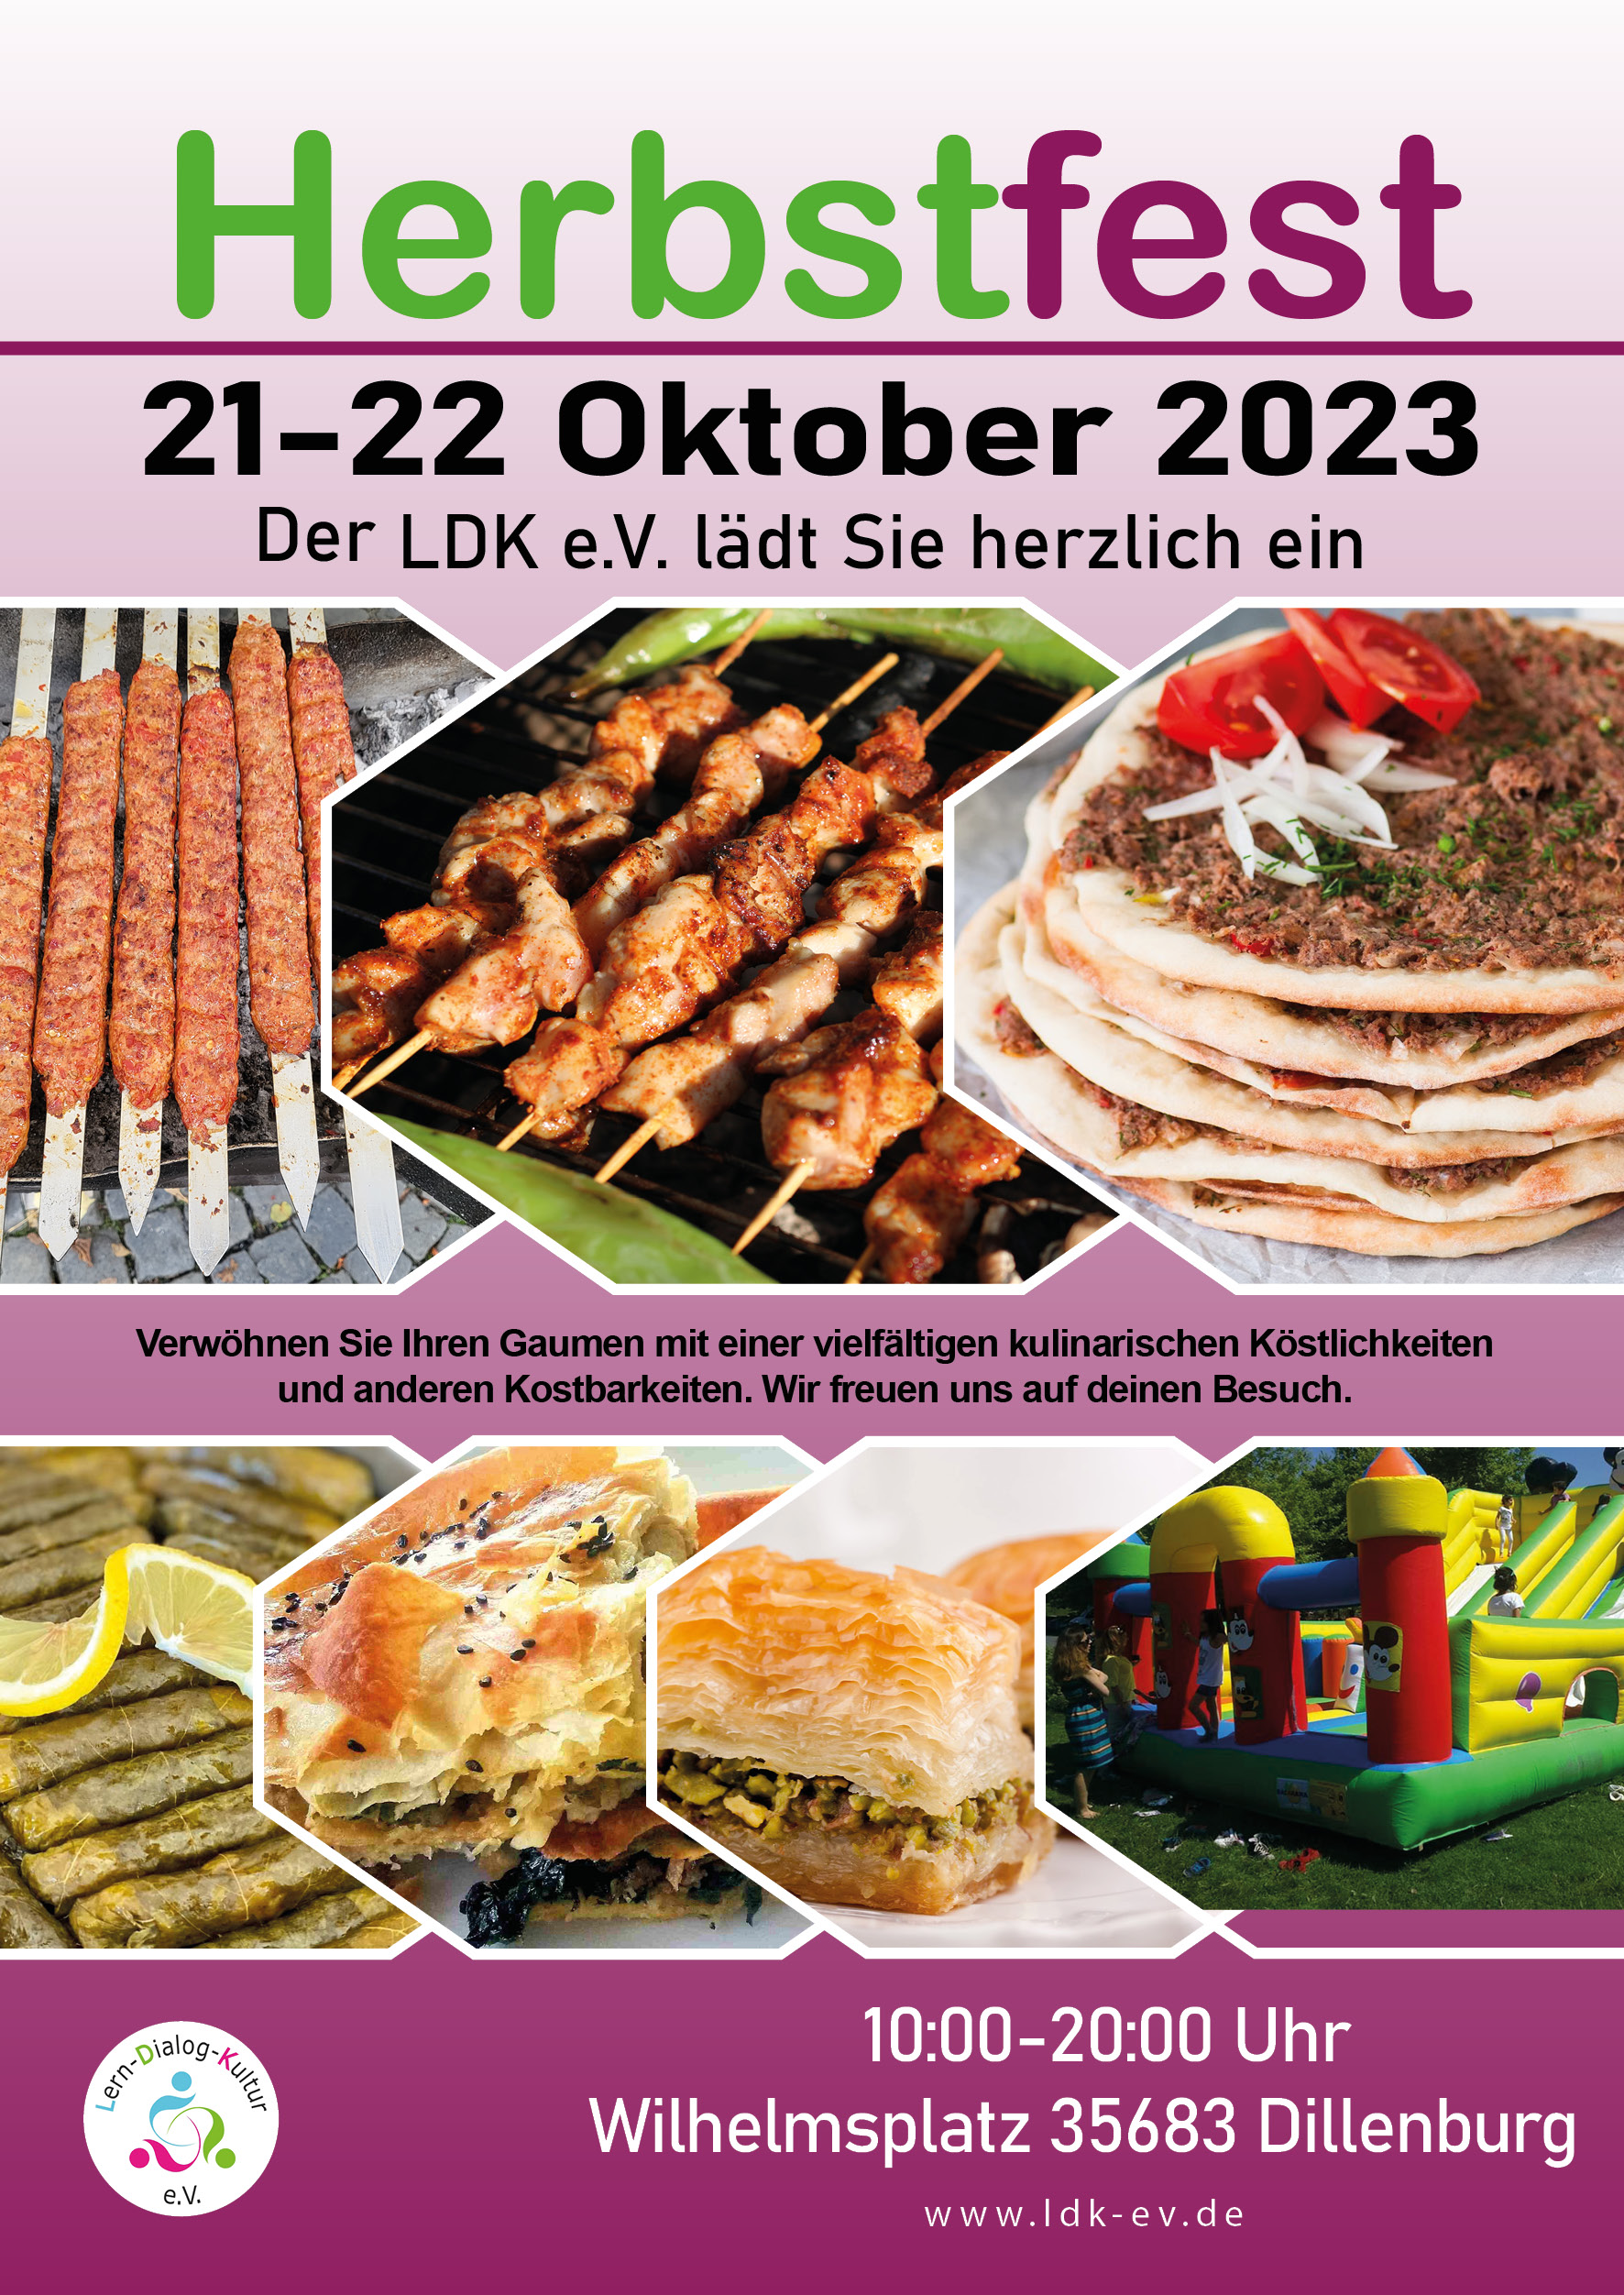 Veranstaltungshinweis auf das Herbstfest des LDK e. V. am 21.10.2023 von 10.00 - 20.00 Uhr auf dem Wilhelmsplatz in Dillenburg.